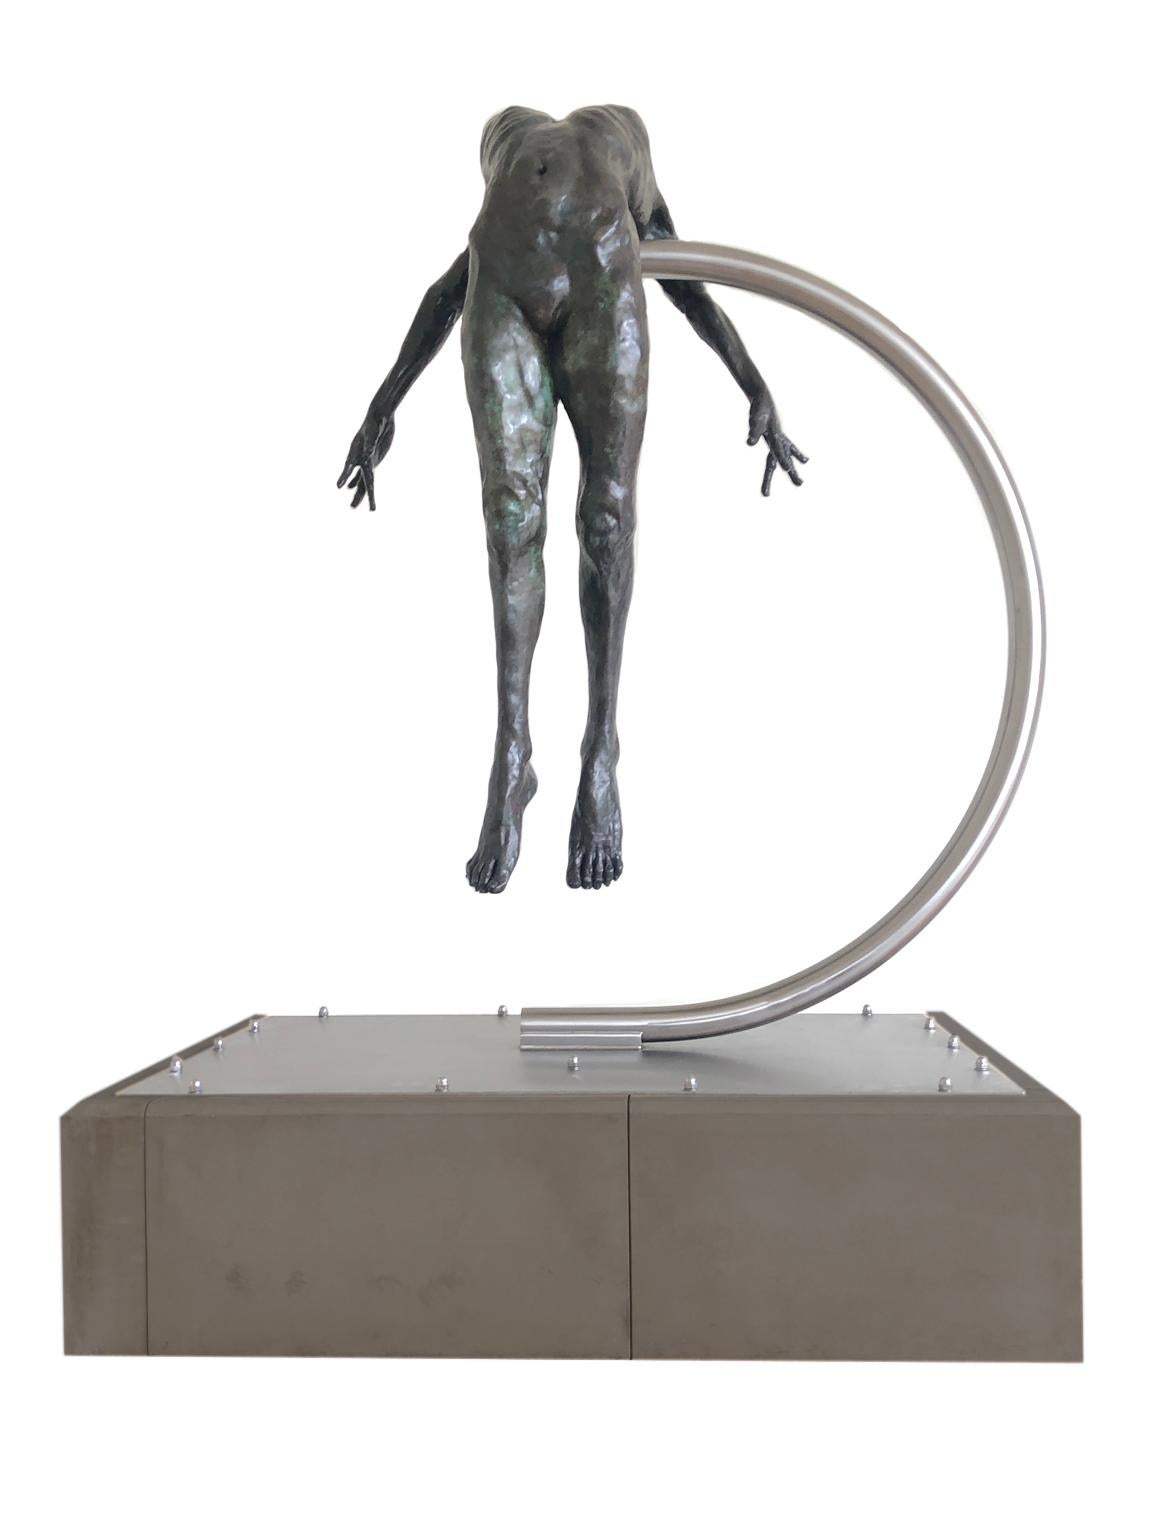 Teresa Wells Nude Sculpture - Nude Female Figurative Bronze Contemporary Sculpture: I Spirit